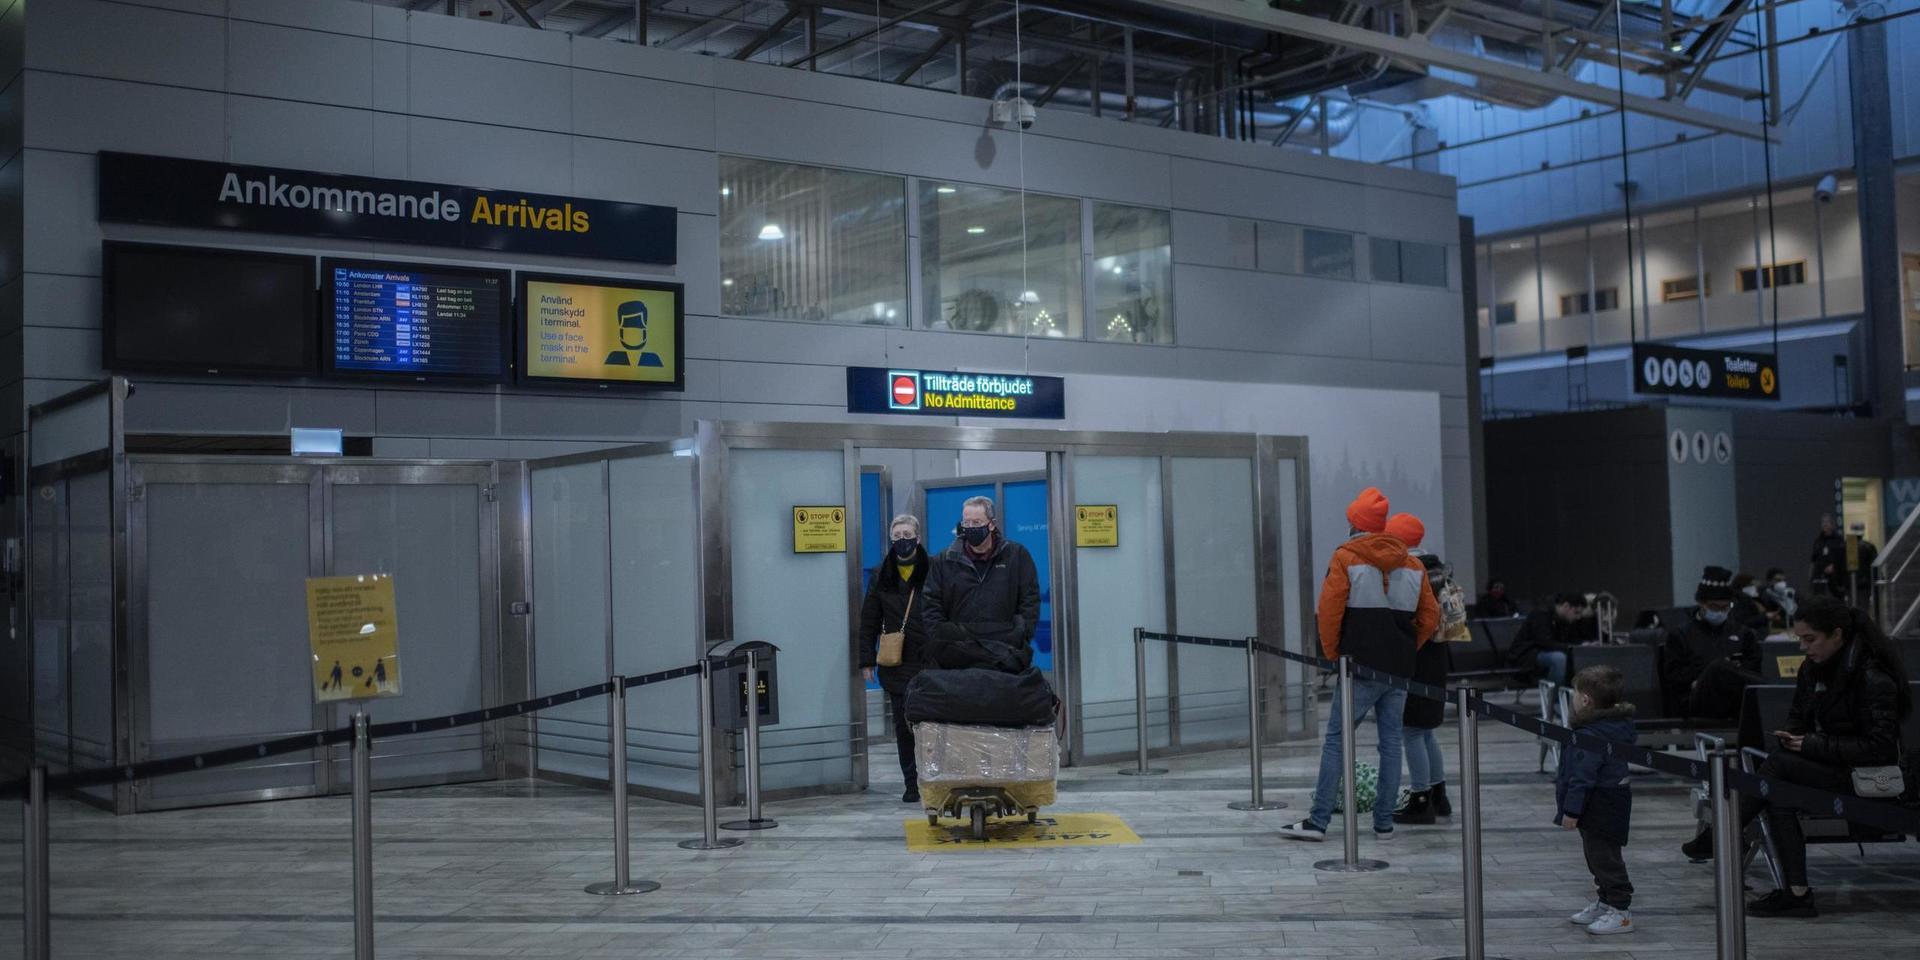 1 600 anlända resenärer lät sig covidtestas på Landvetter flygplats under juli. Det är för få, tycker insändarskribenten.